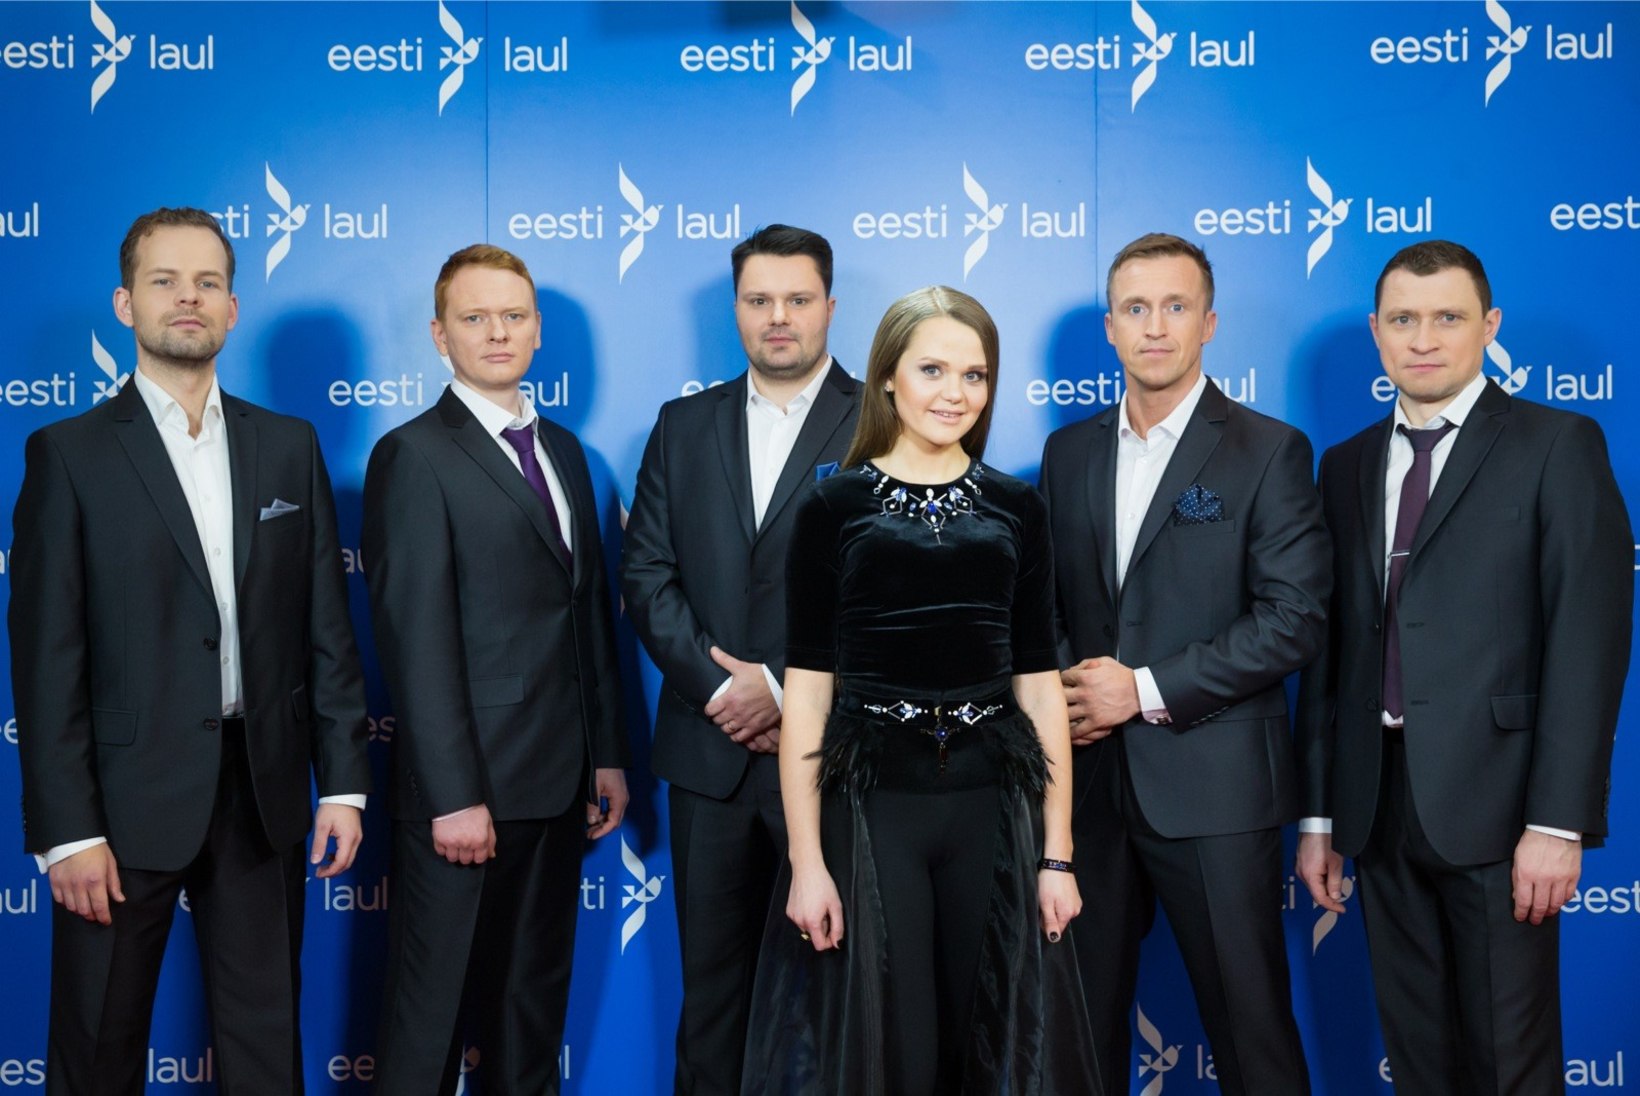 ÕHTULEHE VIDEO | "Eesti laulu" finalist Kati Laev: meie eesmärk oli see lugu inimeste südamesse laulda